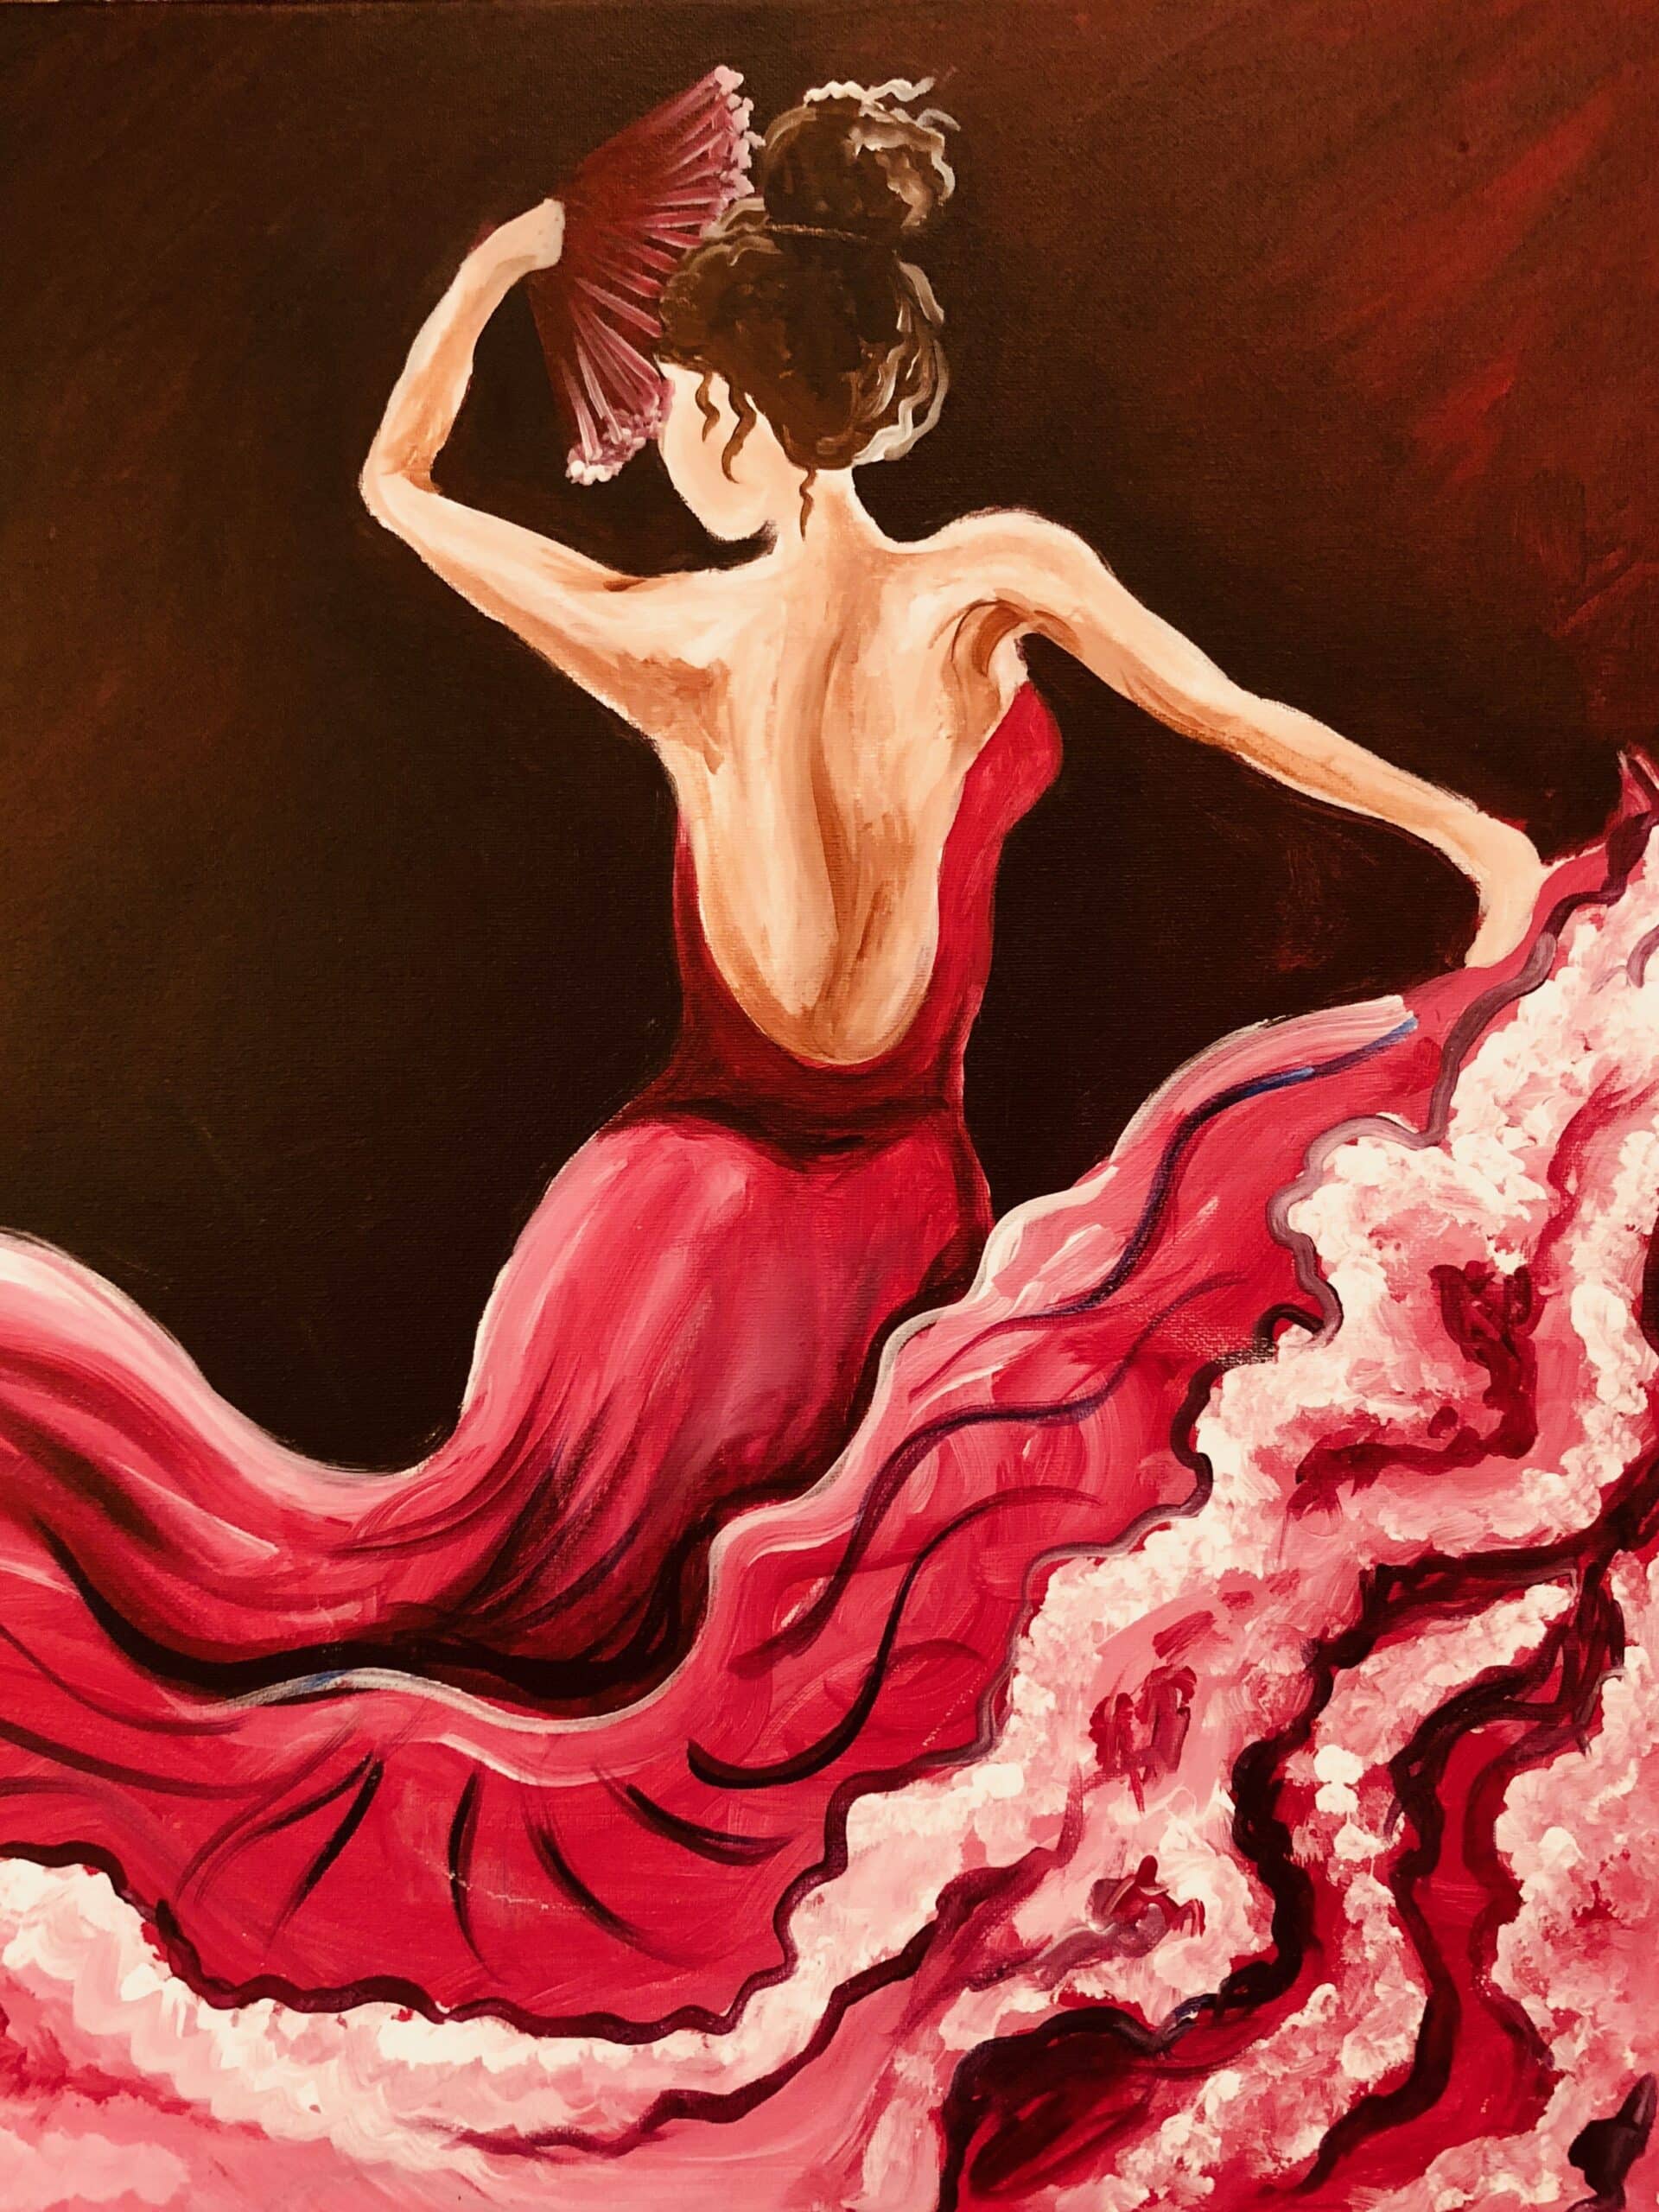 Flamenco dancer scaled